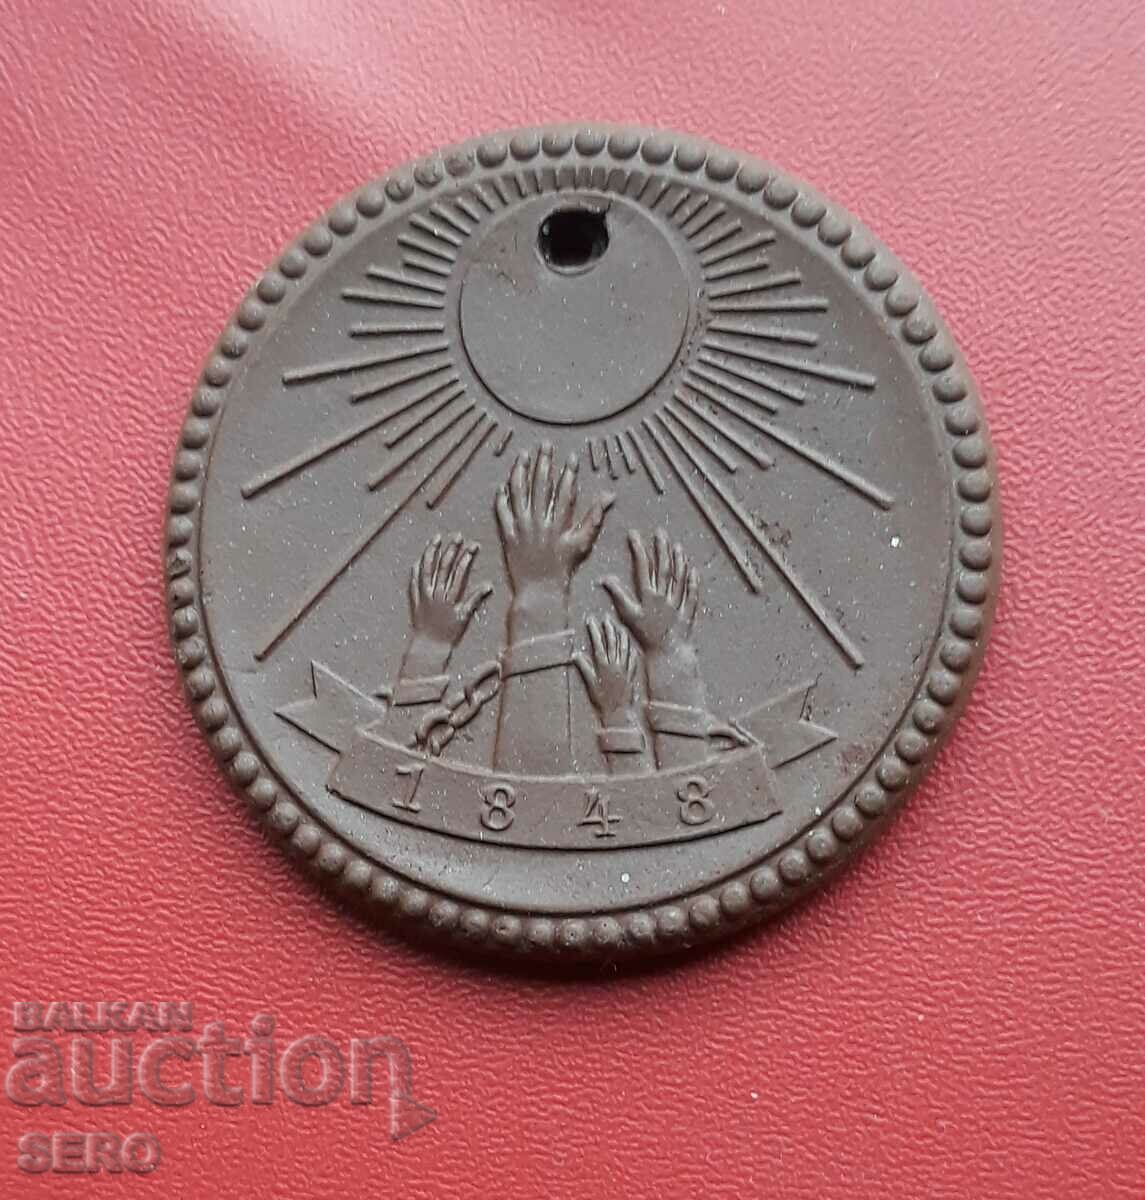 Γερμανία-GDR-μετάλλιο πορσελάνης